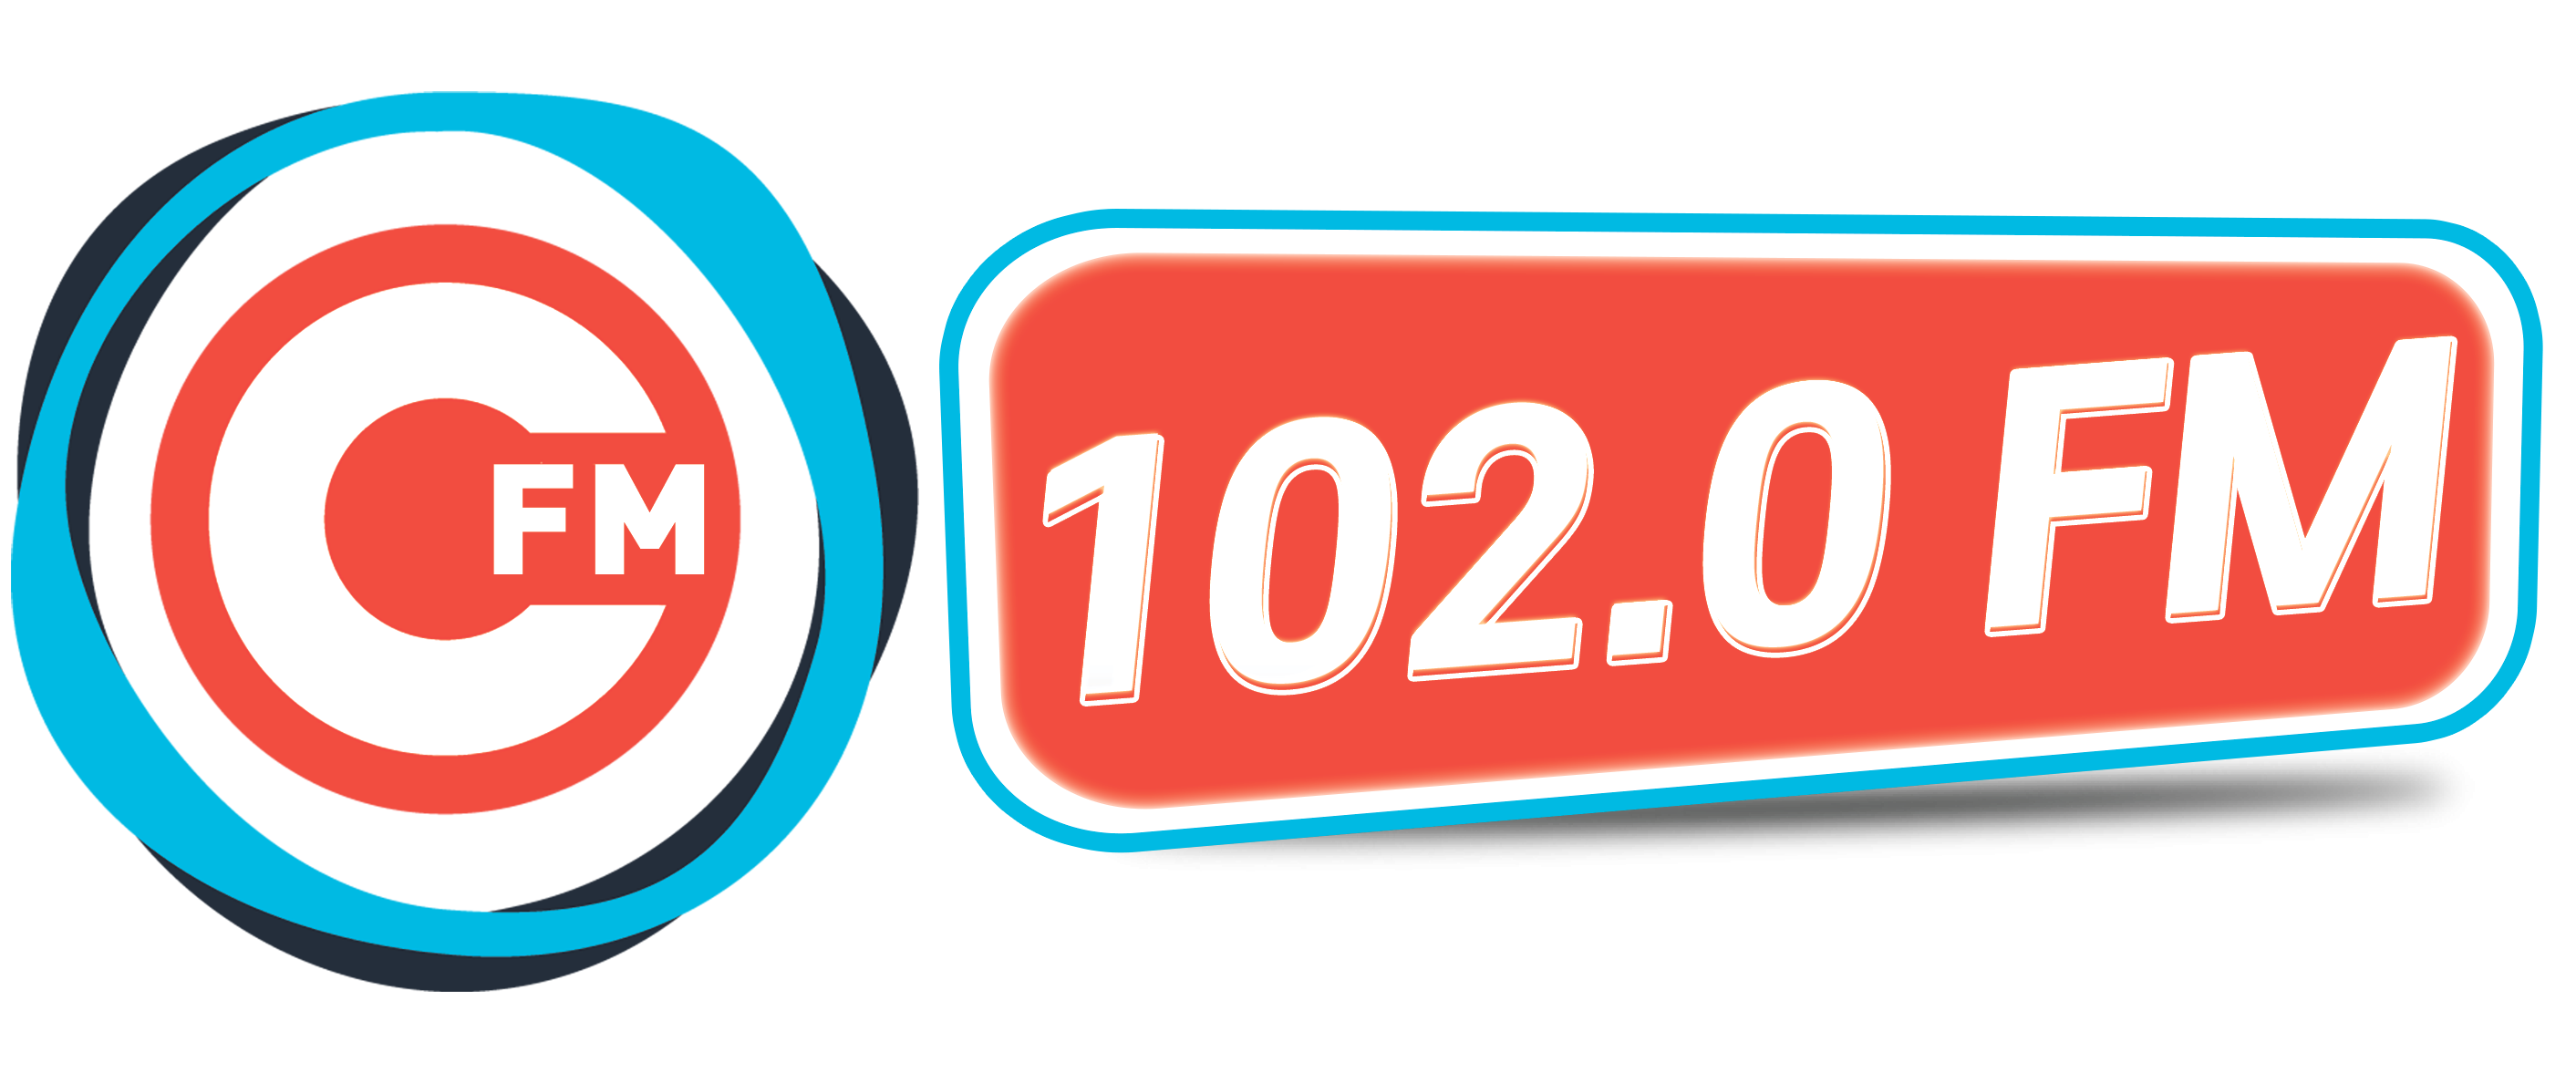 Sevastopol 102.0 FM